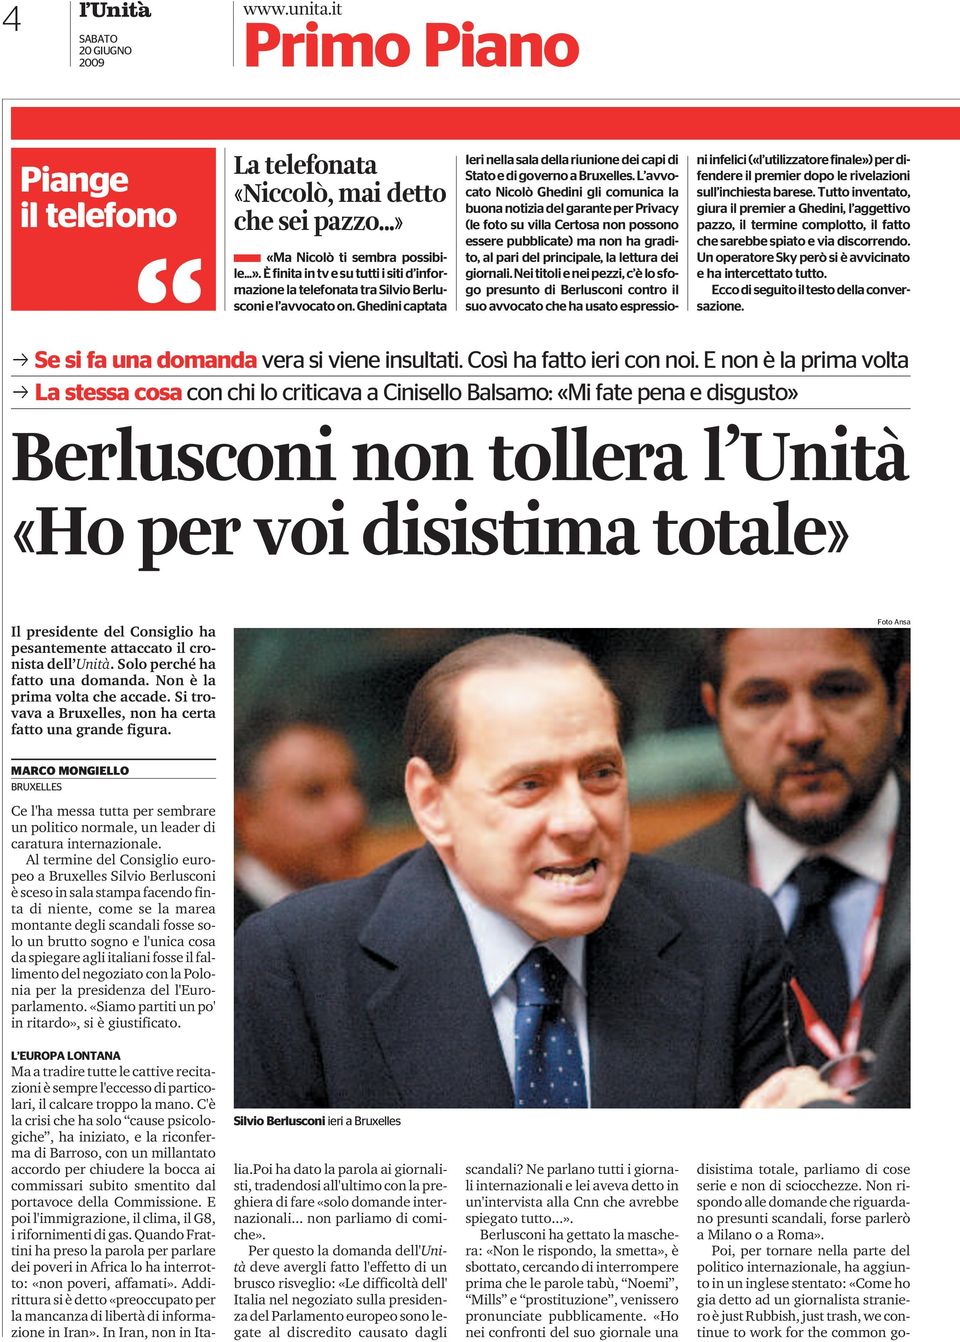 neititolieneipezzi,c èlosfogo presunto di Berlusconi contro il suo avvocato che ha usato espressioniinfelici(«l utilizzatorefinale») perdifendere il premier dopo le rivelazioni sull inchiesta barese.